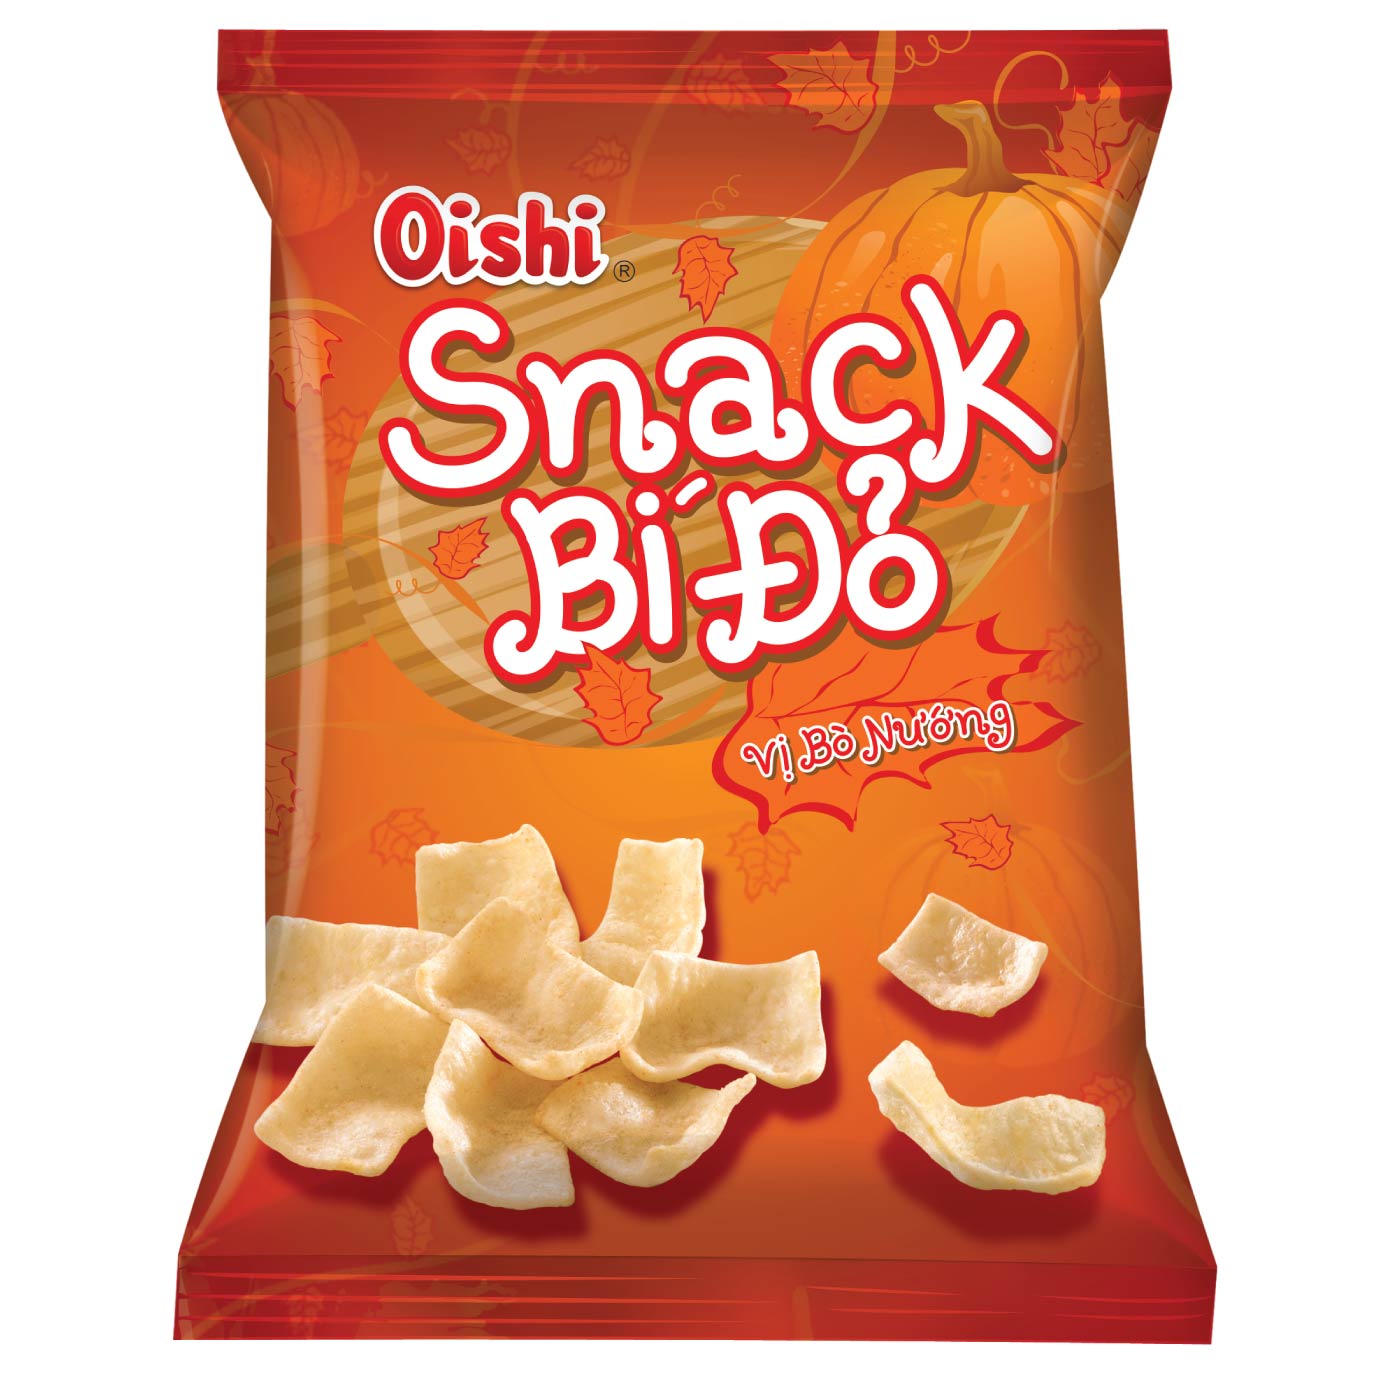 Oishi Combo1 - 6 gói snack 40g (Snack Cua Sốt Chua Ngọt, Snack 4X Vị Phô Mai, Snack Hành, Snack Cà Chua, Snack Bí Đỏ, Snack Phồng Mực)